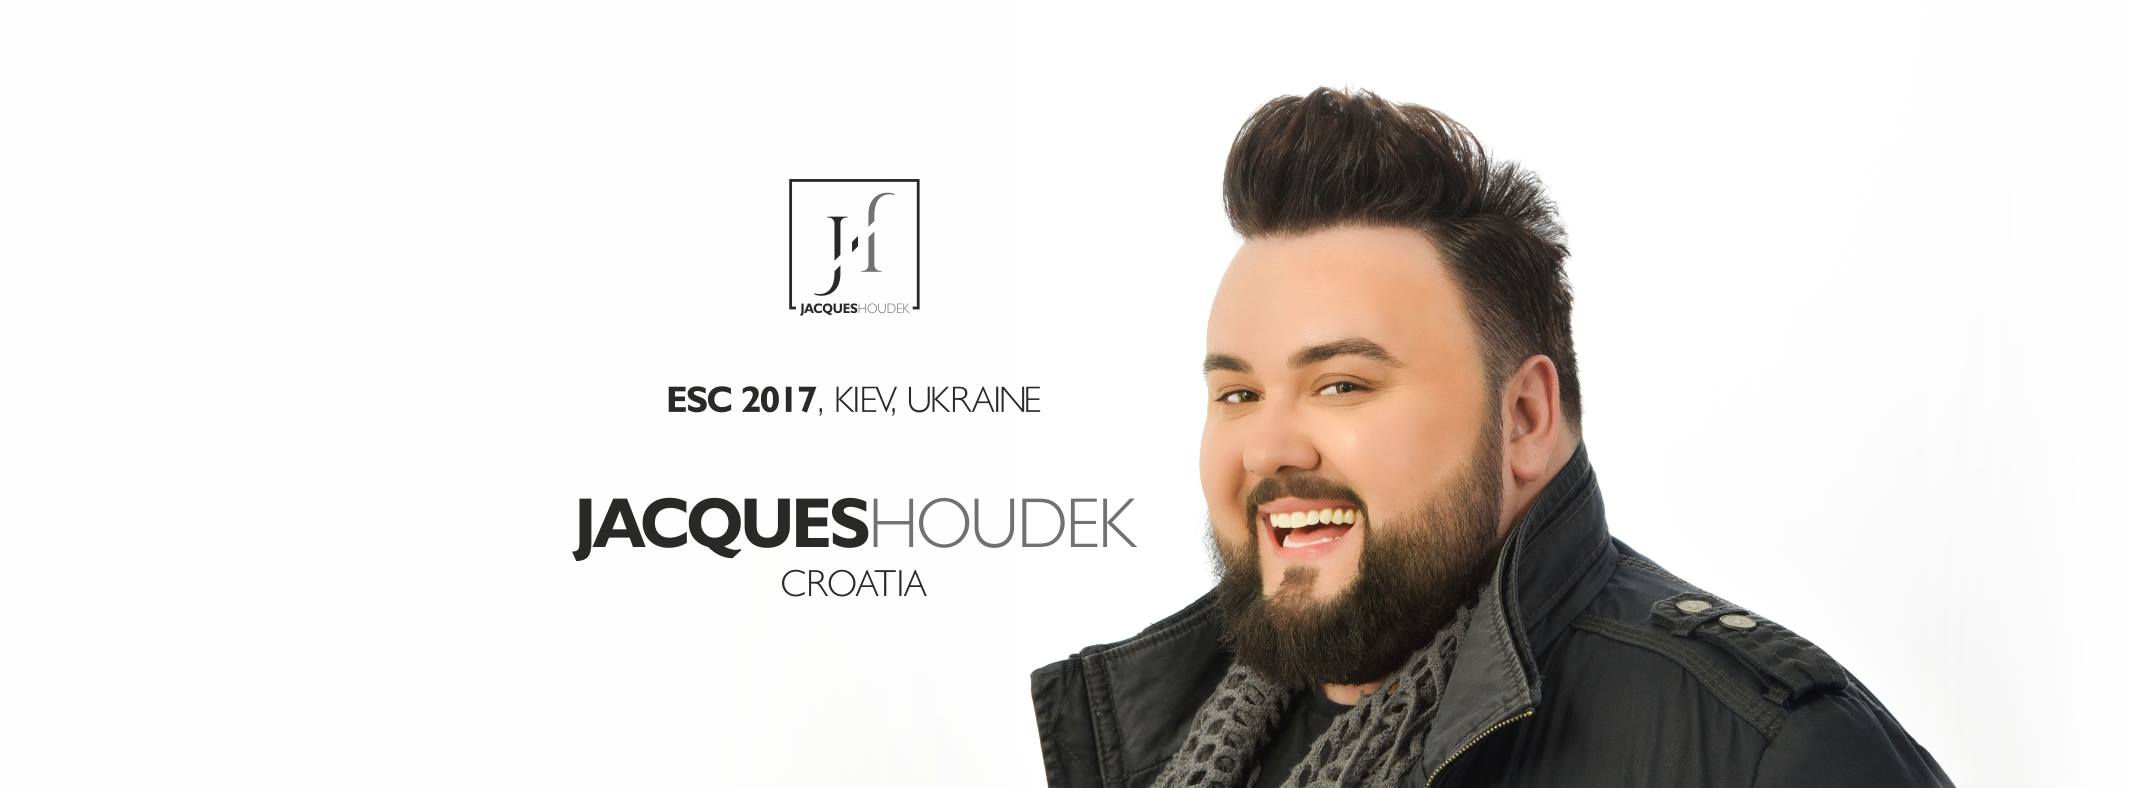 Jacques Houdek predstavlja RH na natjecanju za pjesmu Eurovizije u Ukrajini